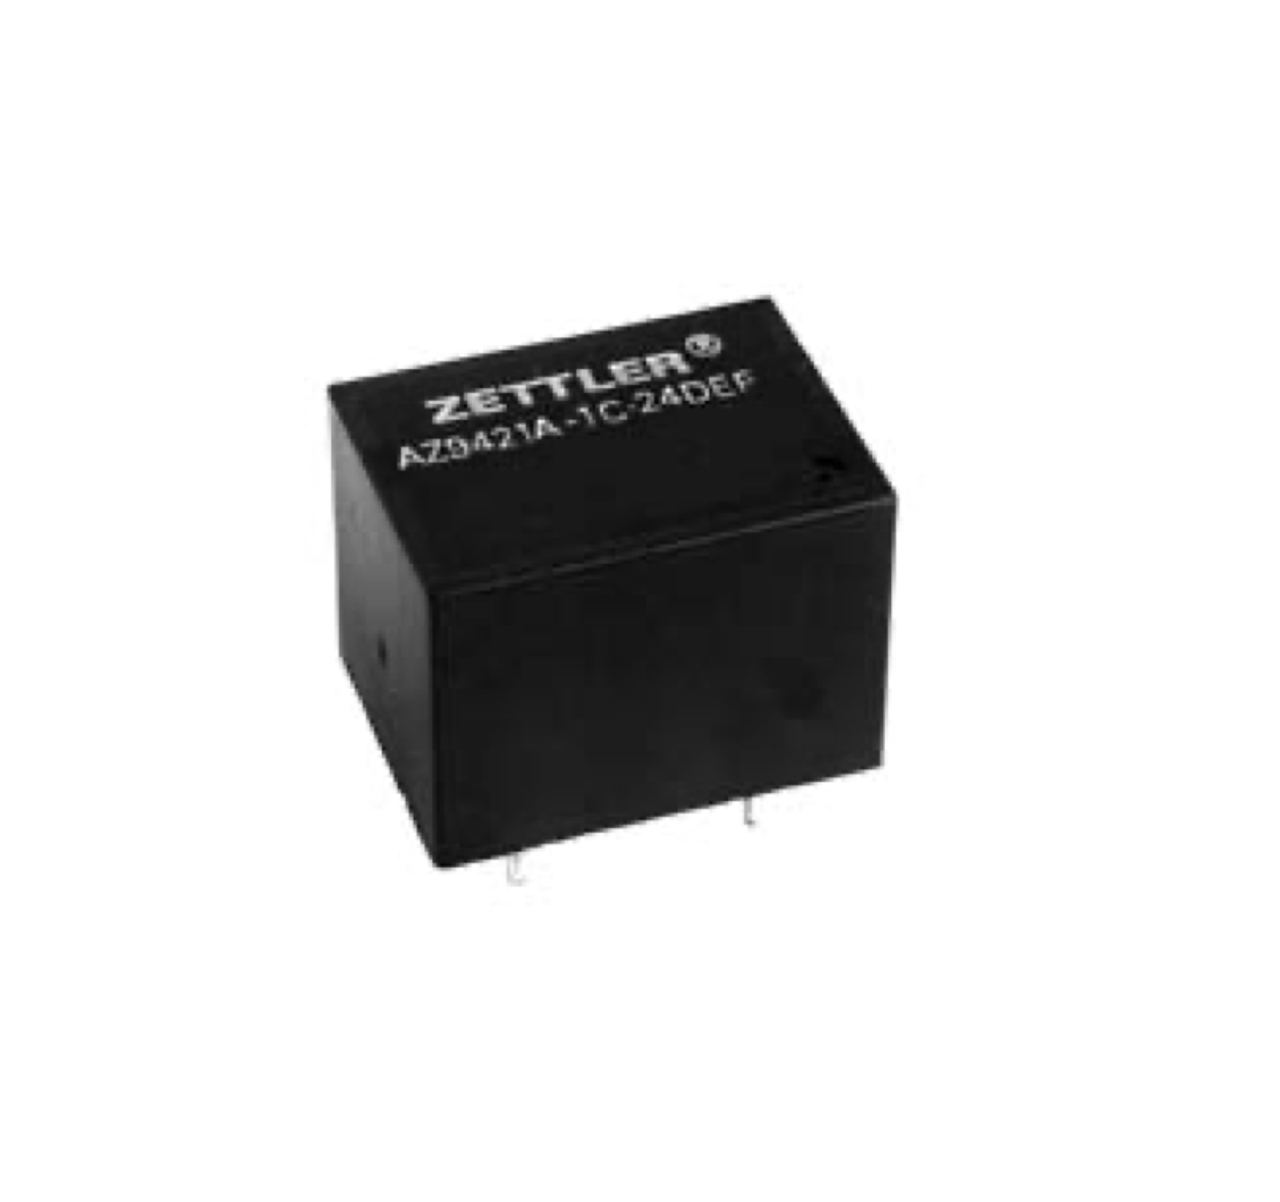 American Zettler AZ9421A-1CT-24DE Power Relay